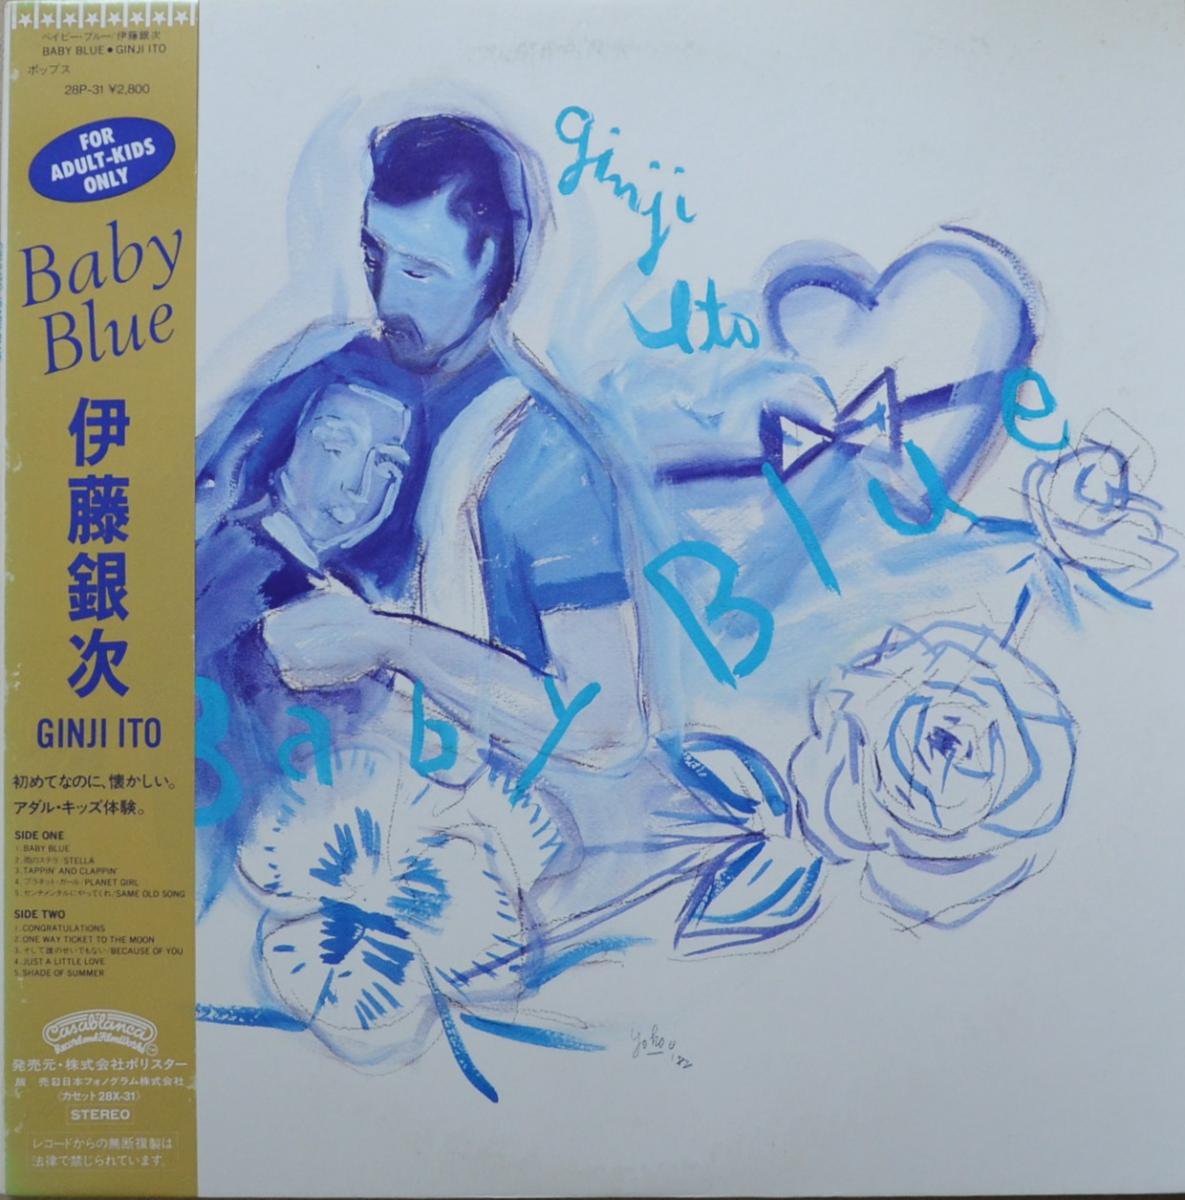 伊藤銀次 GINJI ITO / BABY BLUE (LP)